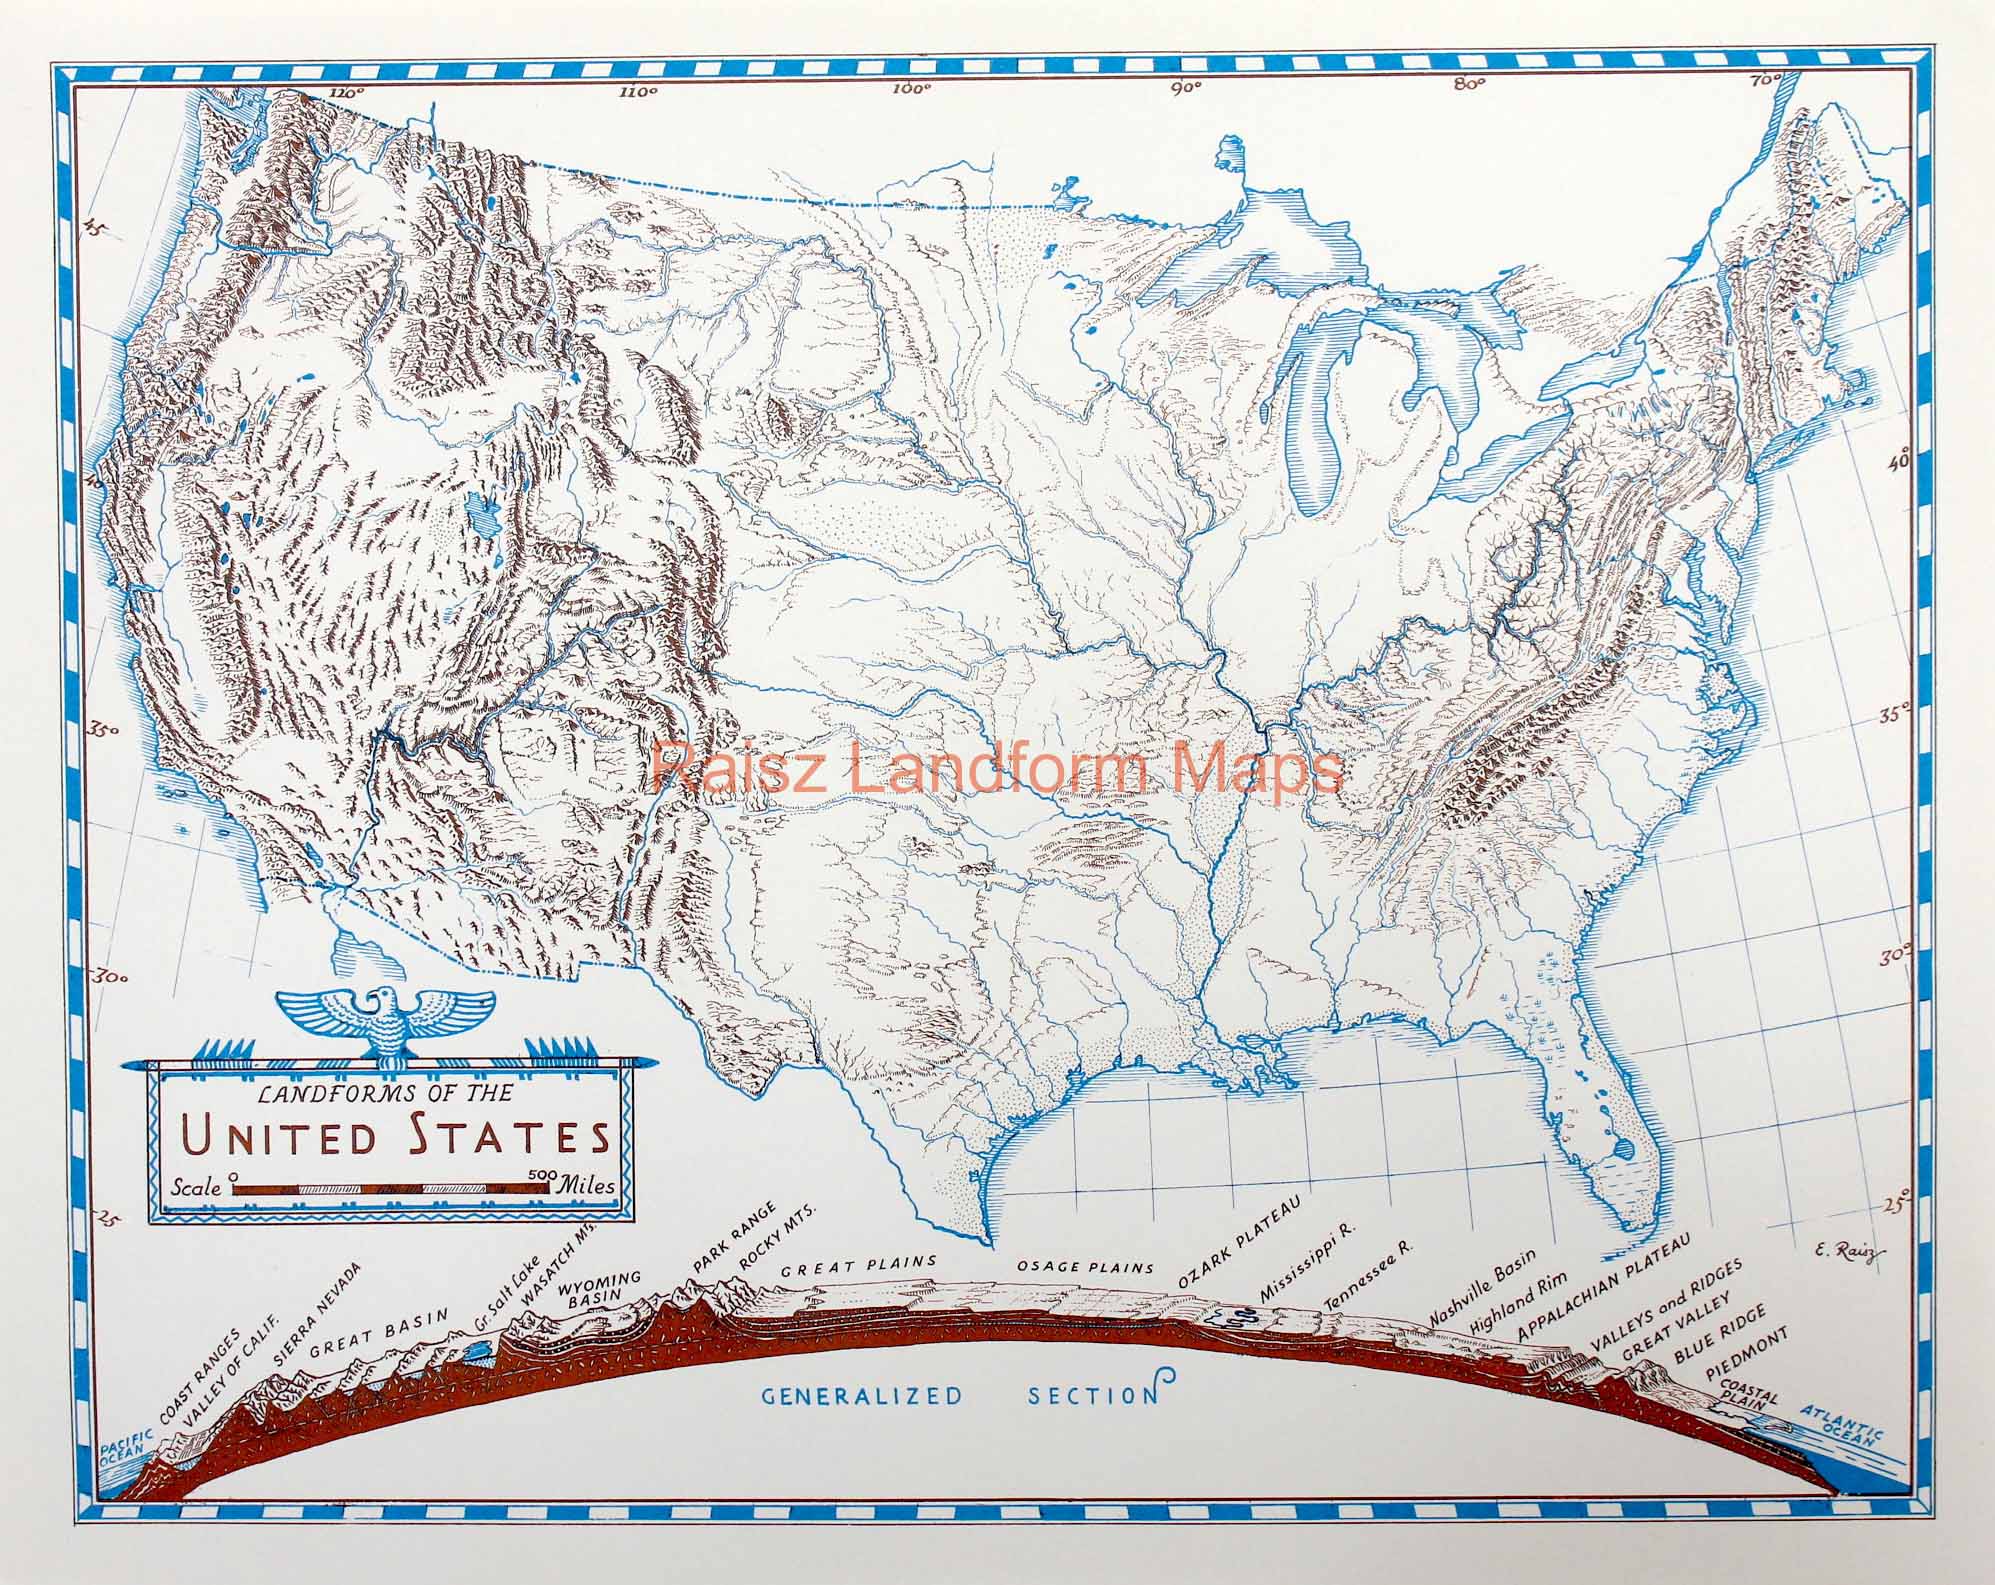 30 United States Landforms Map Maps Database Source